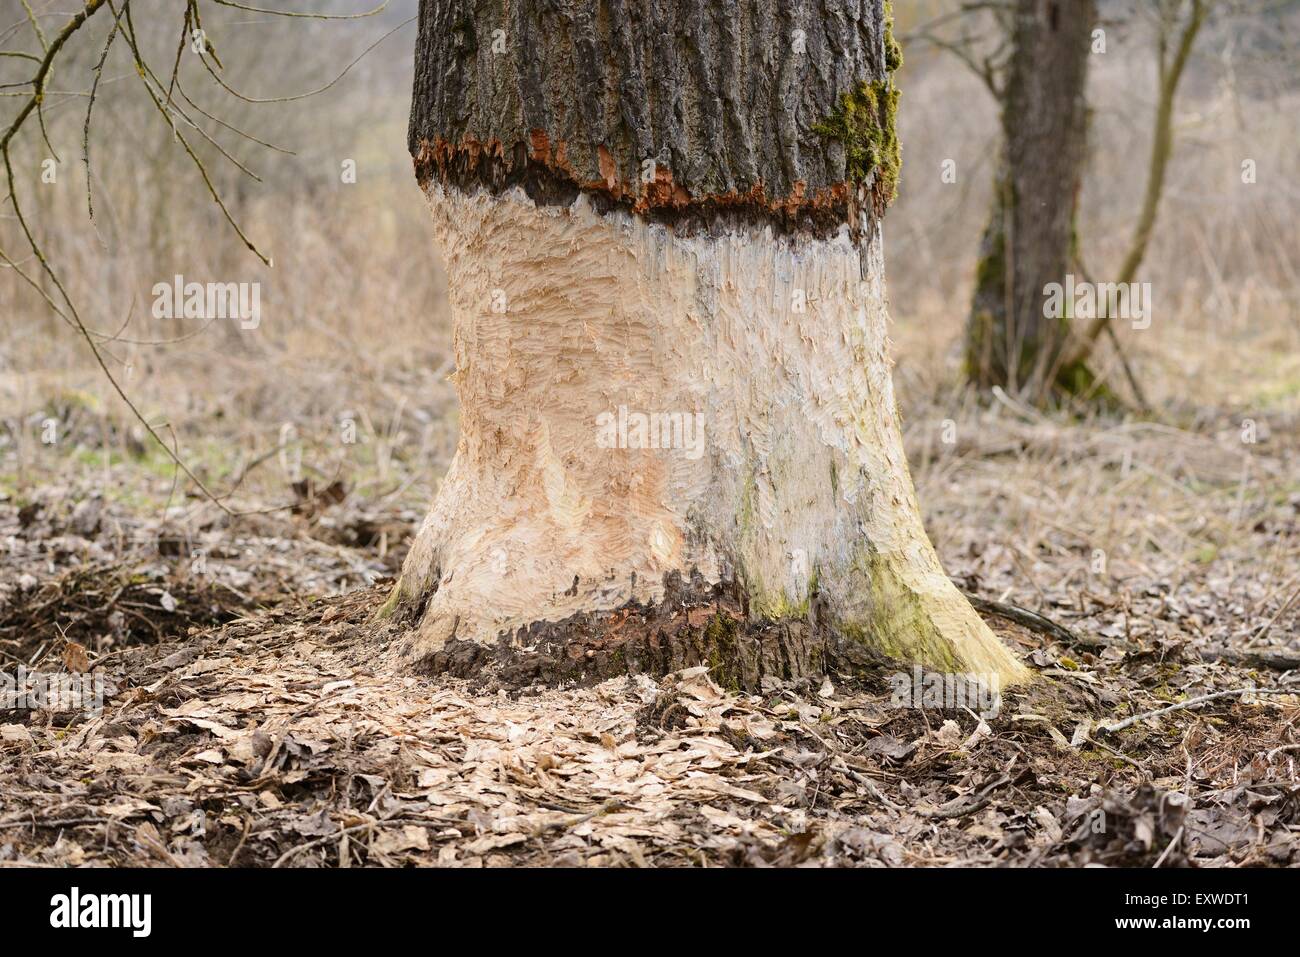 Aspen, Populus tremula, damaged by a beaver, Upper Palatinate, Bavaria, Germany, Europe Stock Photo